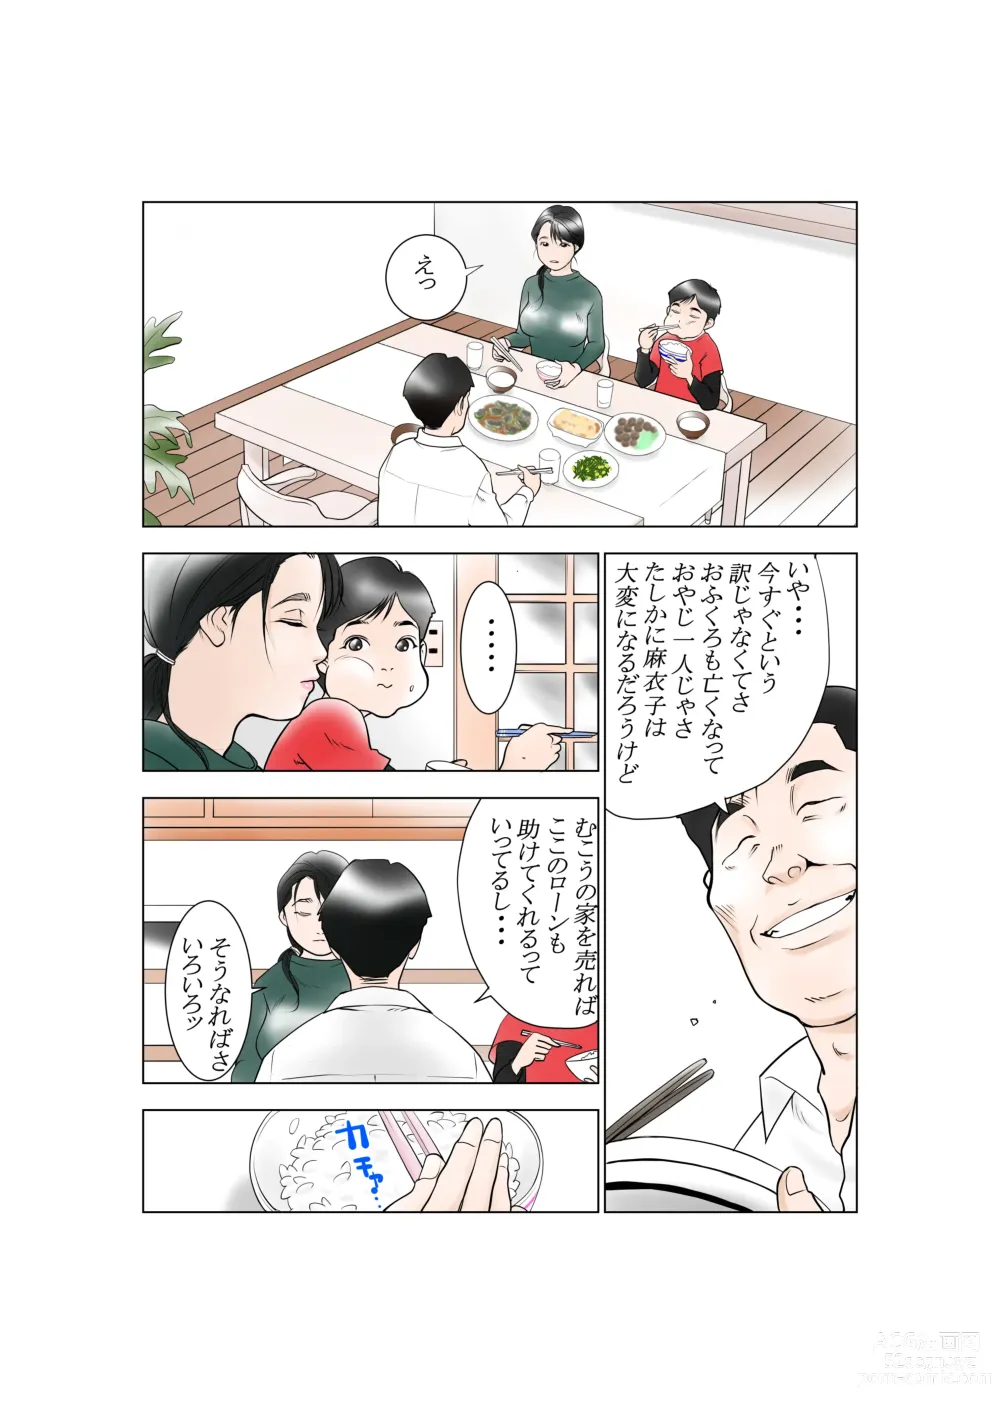 Page 6 of doujinshi D. H Danna ni Himitsu Yasuda Maiko (36-sai) no Baai